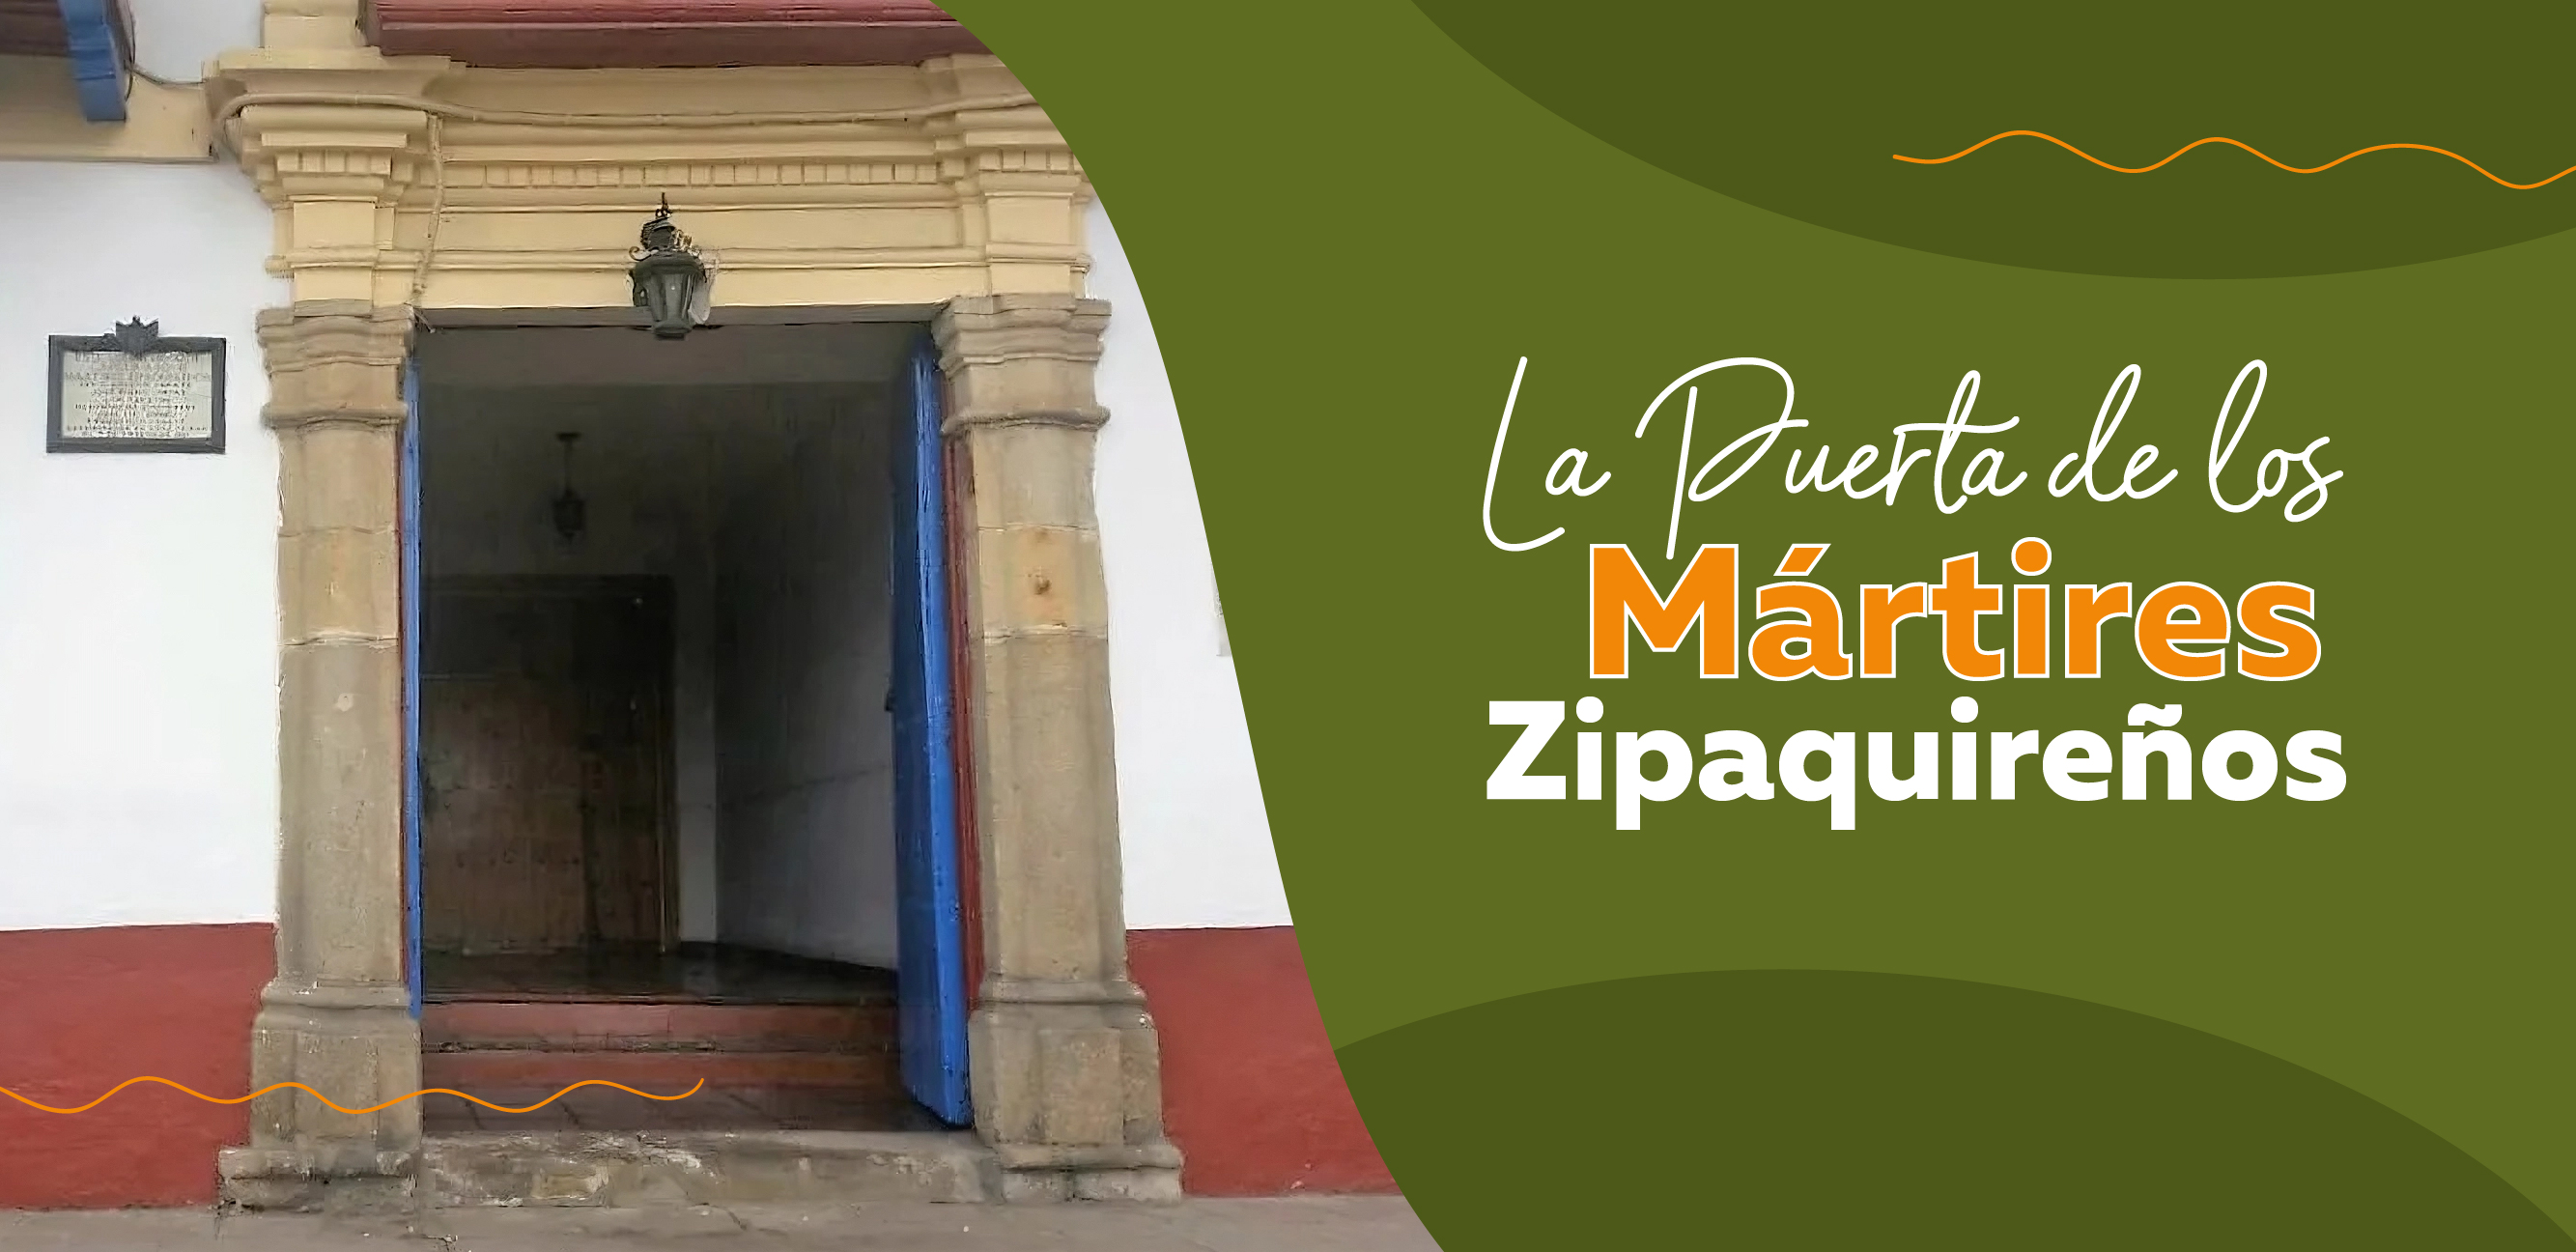 La Puerta de los Mártires Zipaquireños: Un Viaje por la Libertad y la Historia de Colombia